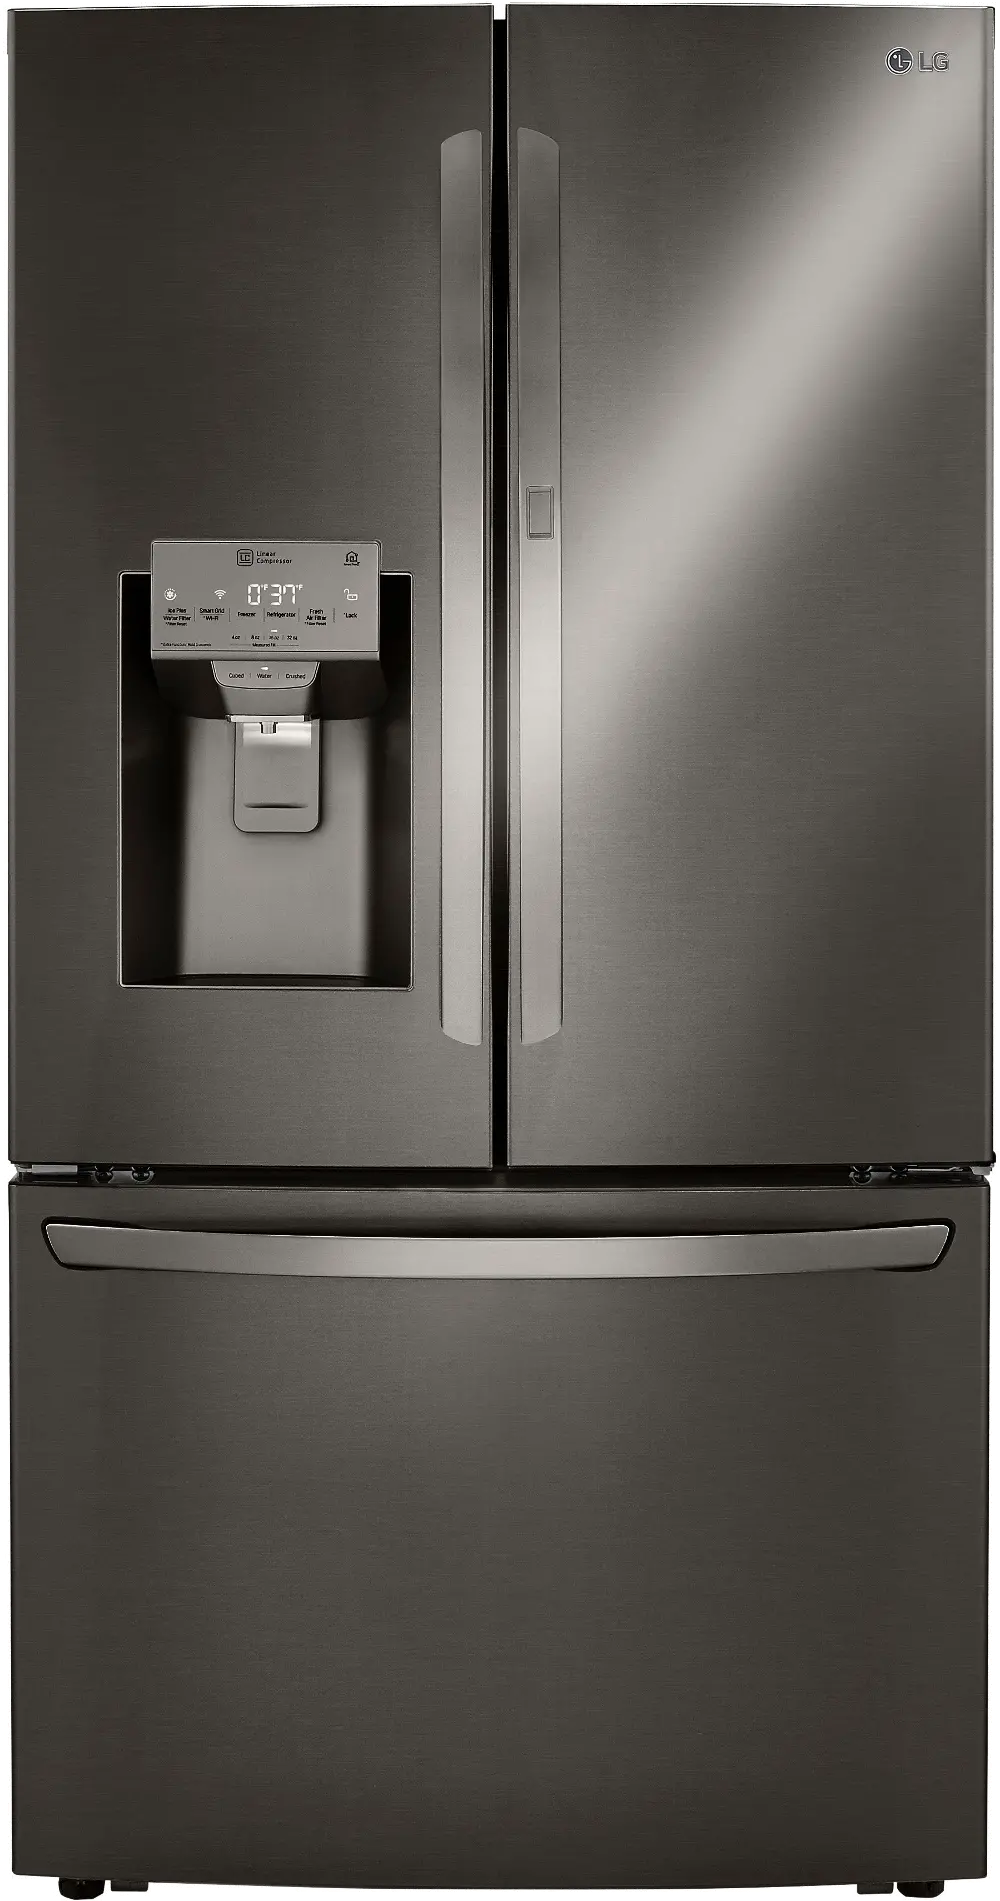 LRFDC2406D LG 23.5 cu ft French Door in Door Refrigerator - Counter Depth Black Stainless Steel-1